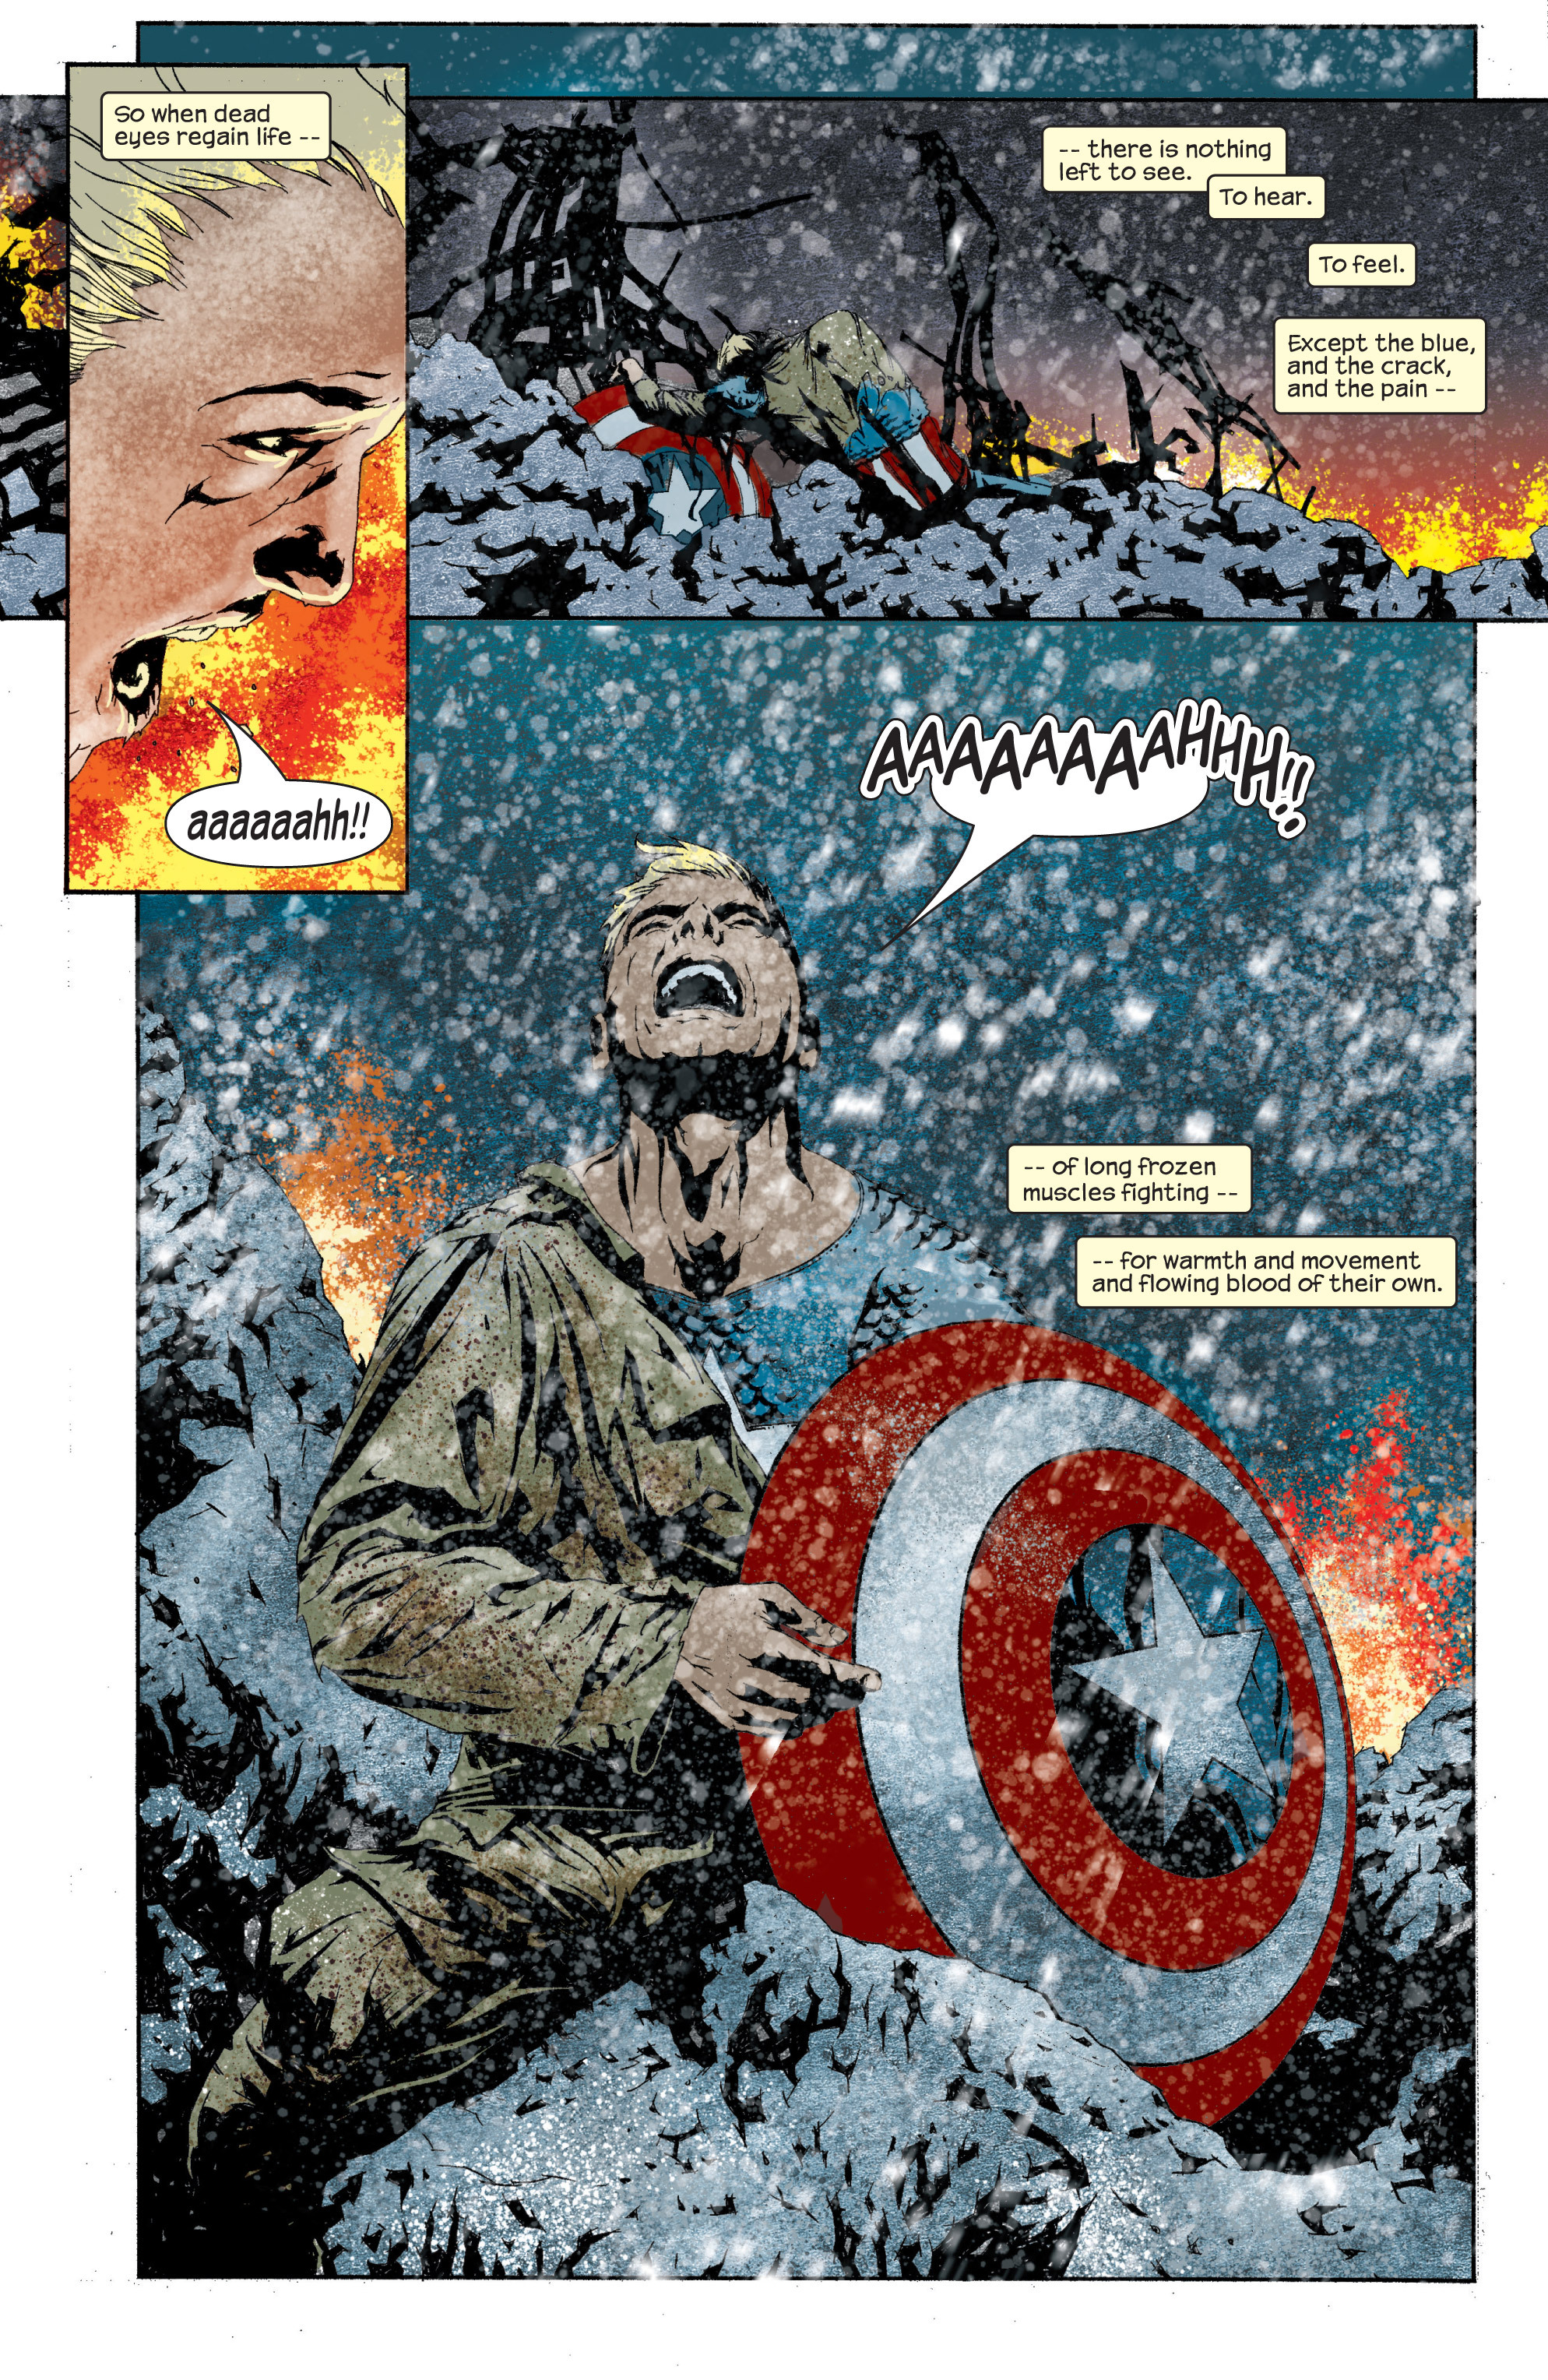 Captain America 2002 Issue 12 Read Captain America 2002